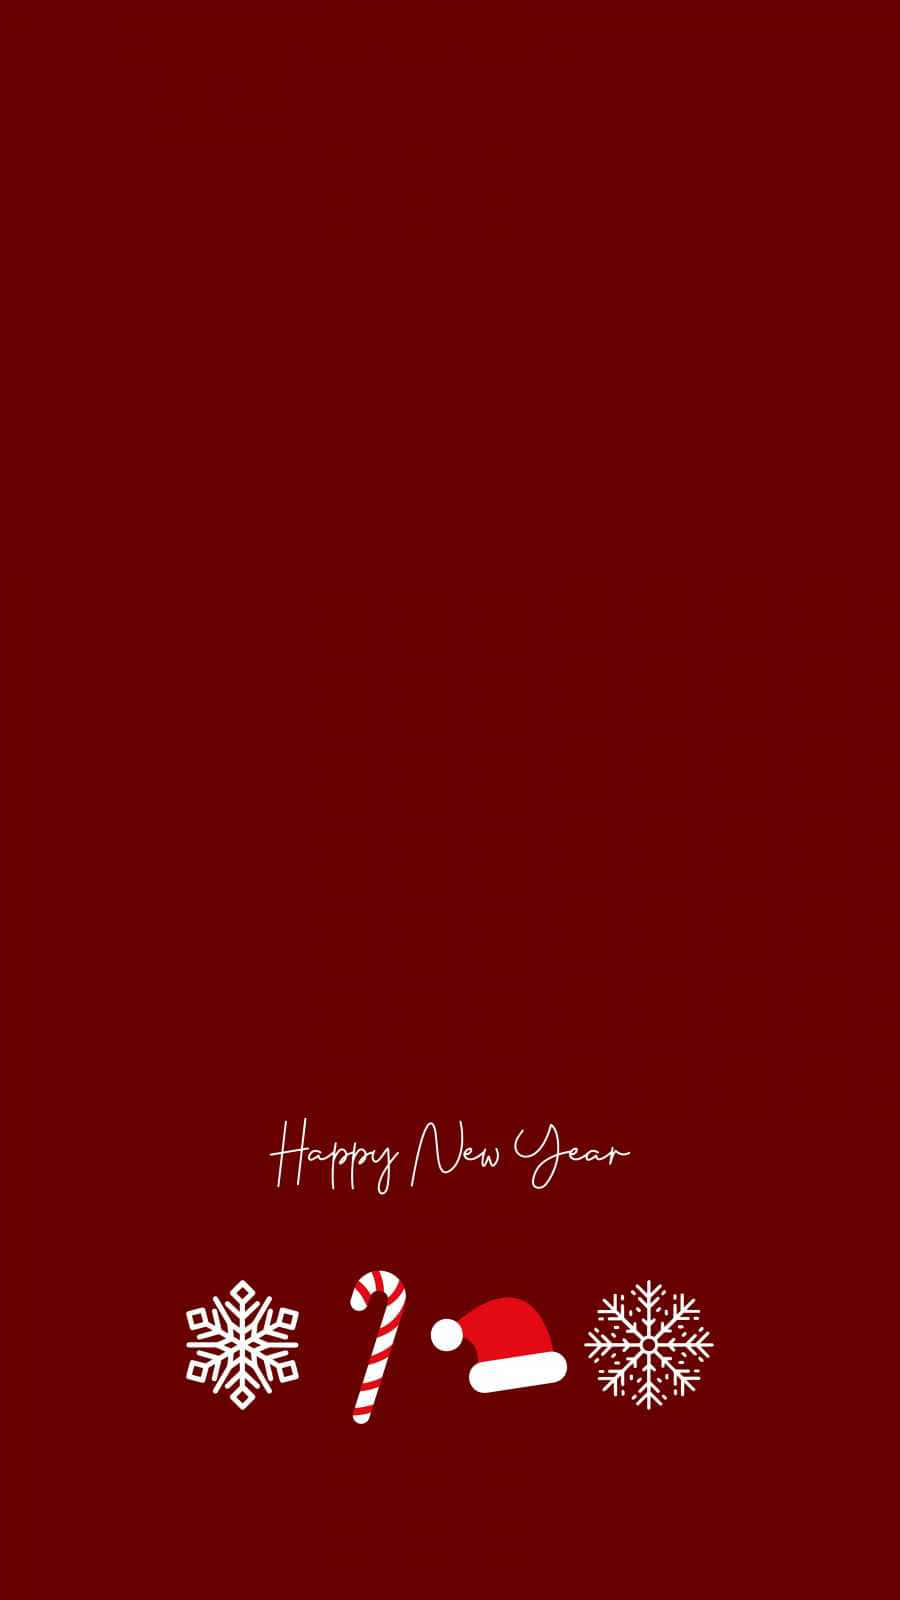 Ichwünsche Ihnen Ein Ganzes Jahr Voller Segen Und Freude Mit Diesem Glücklichen Neujahrs-handy. Wallpaper